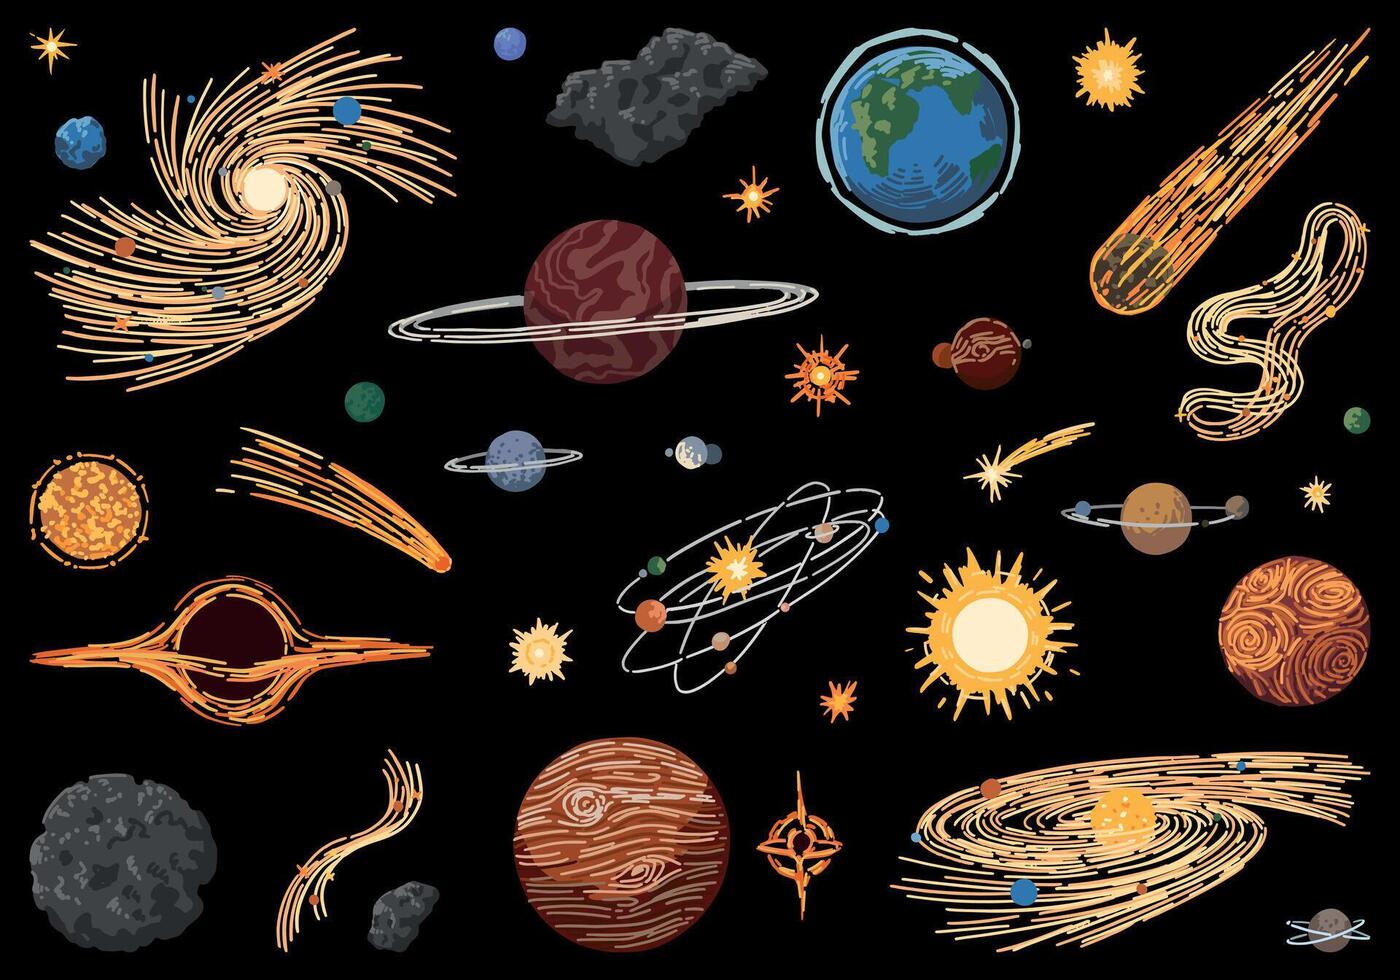 cosmico spazio scarabocchi impostare. cartone animato disegni di pianeti, stelle, comete, asteroidi, galassie. astronomia fenomeno schizzi. mano disegnato vettore illustrazione isolato su nero.